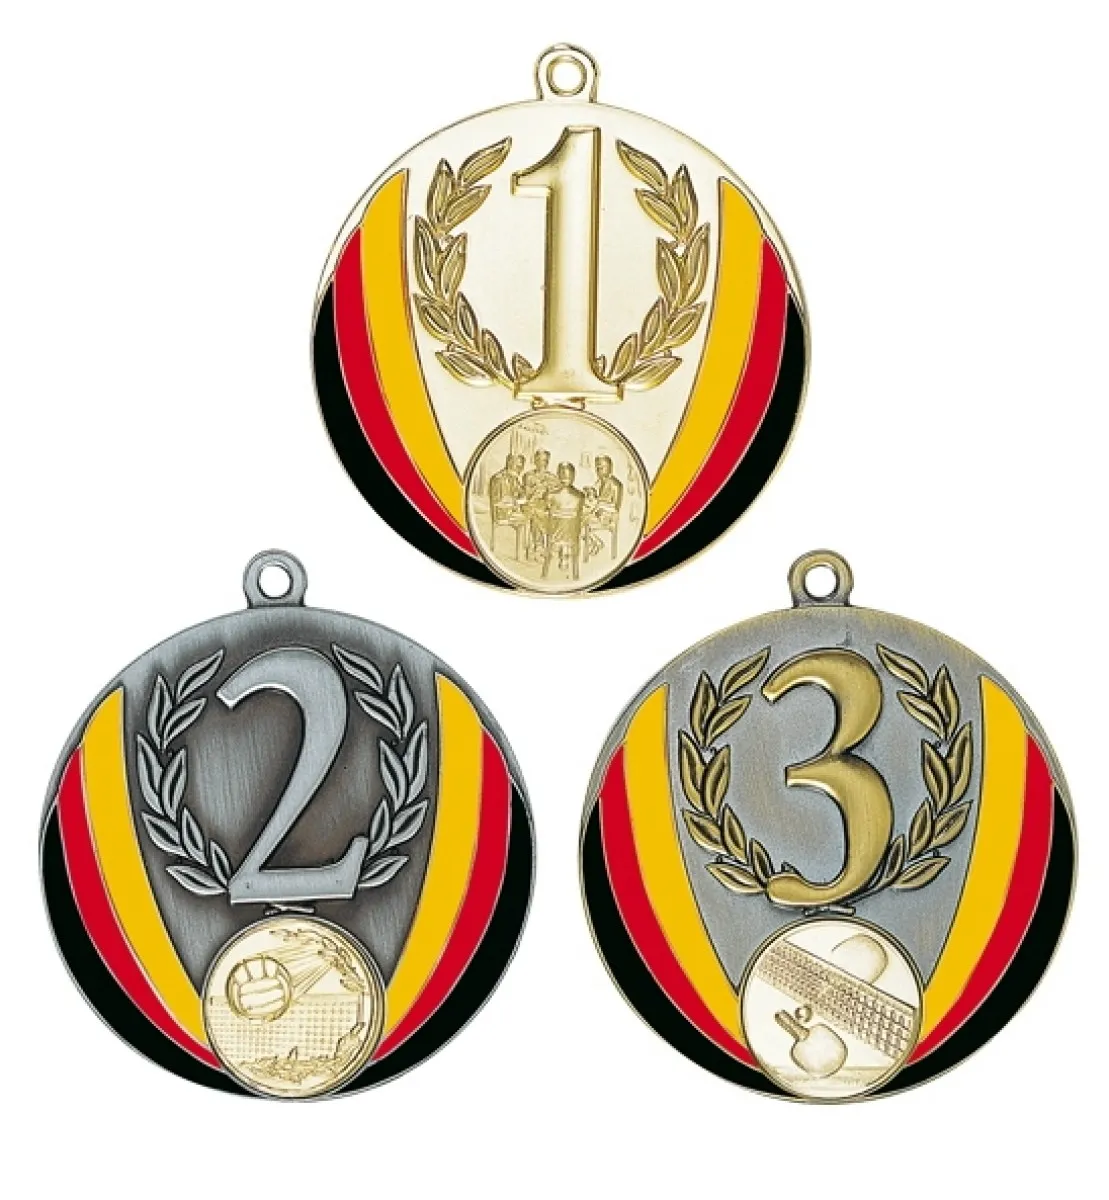 Medallas con banderas alemanas en oro, plata o bronce. Diametro aprox. 7 cm. Tamano del emblema 2,5 cm.